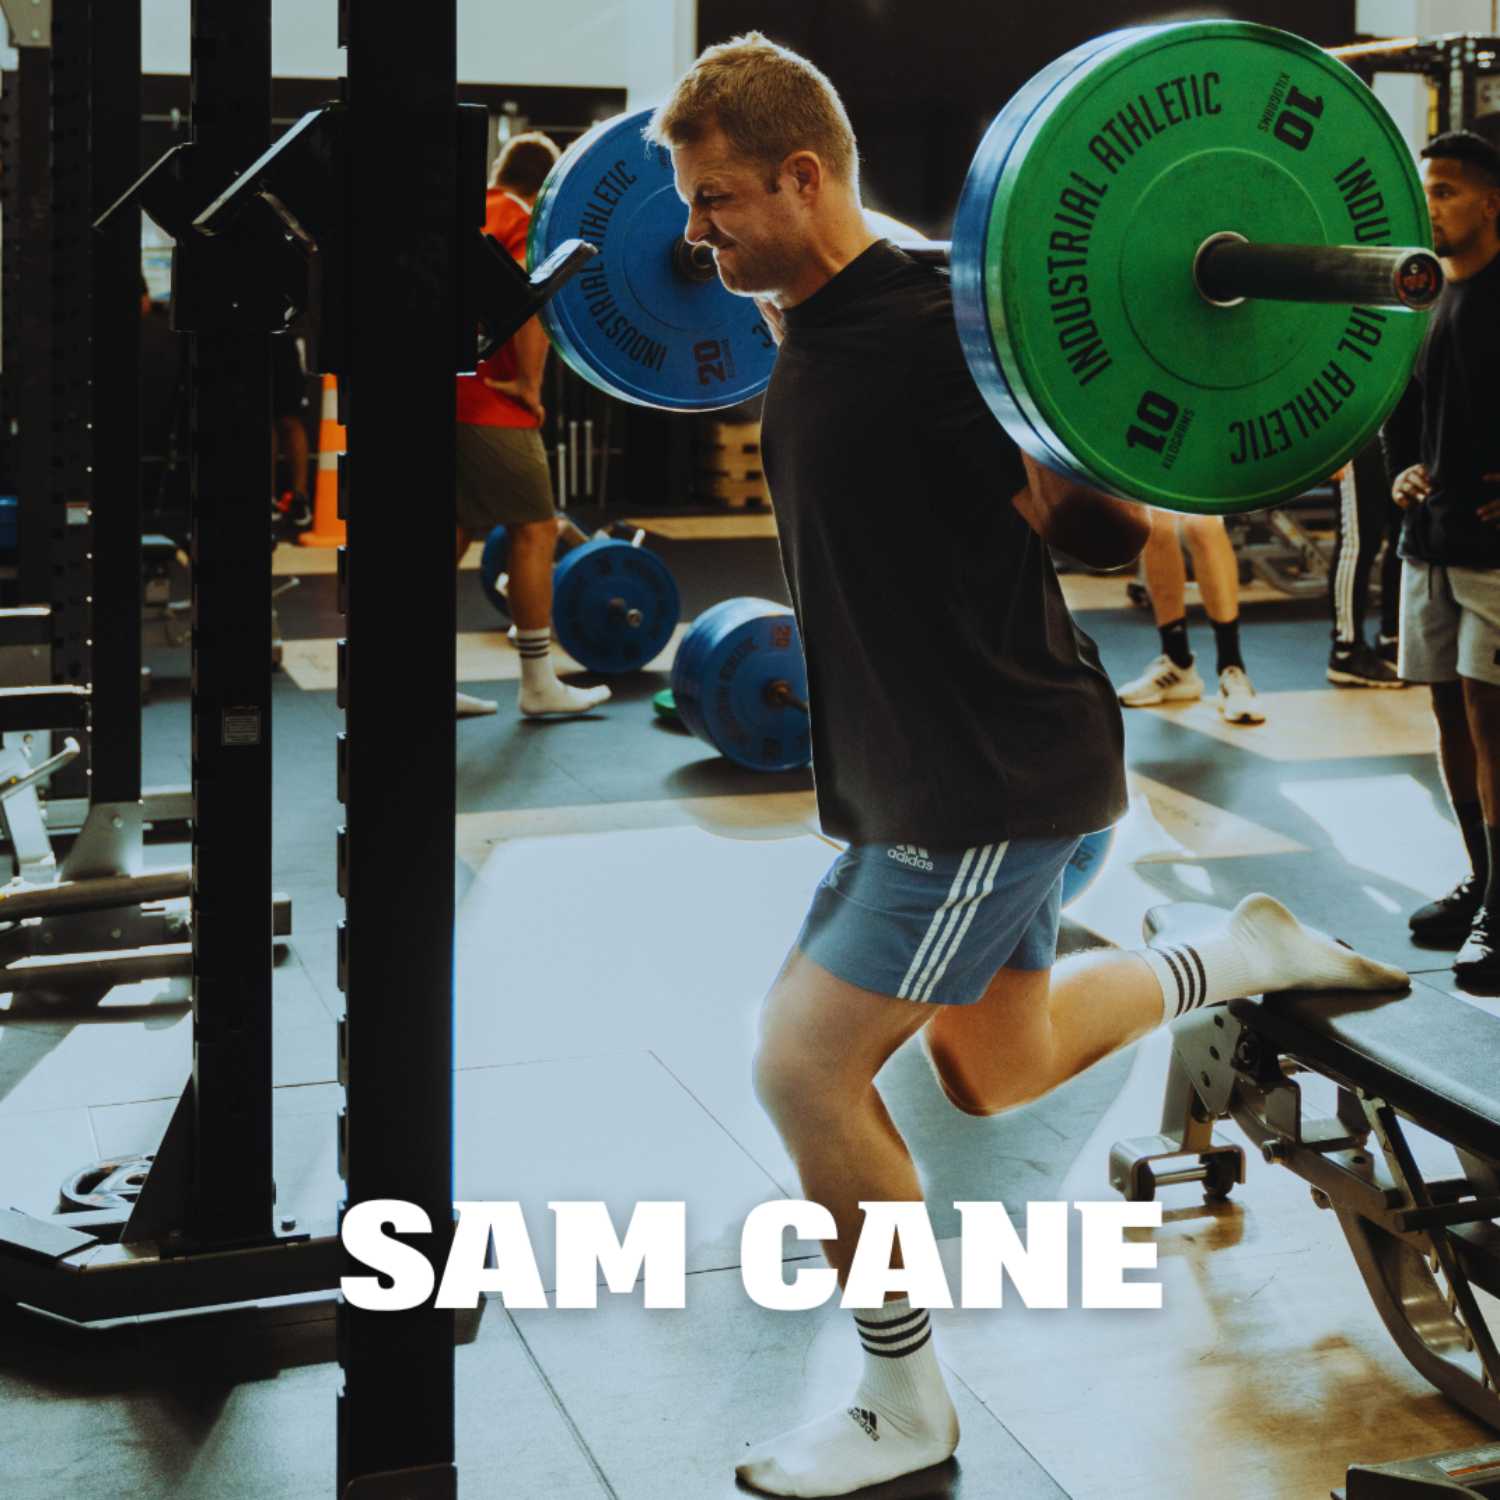 Sam Cane